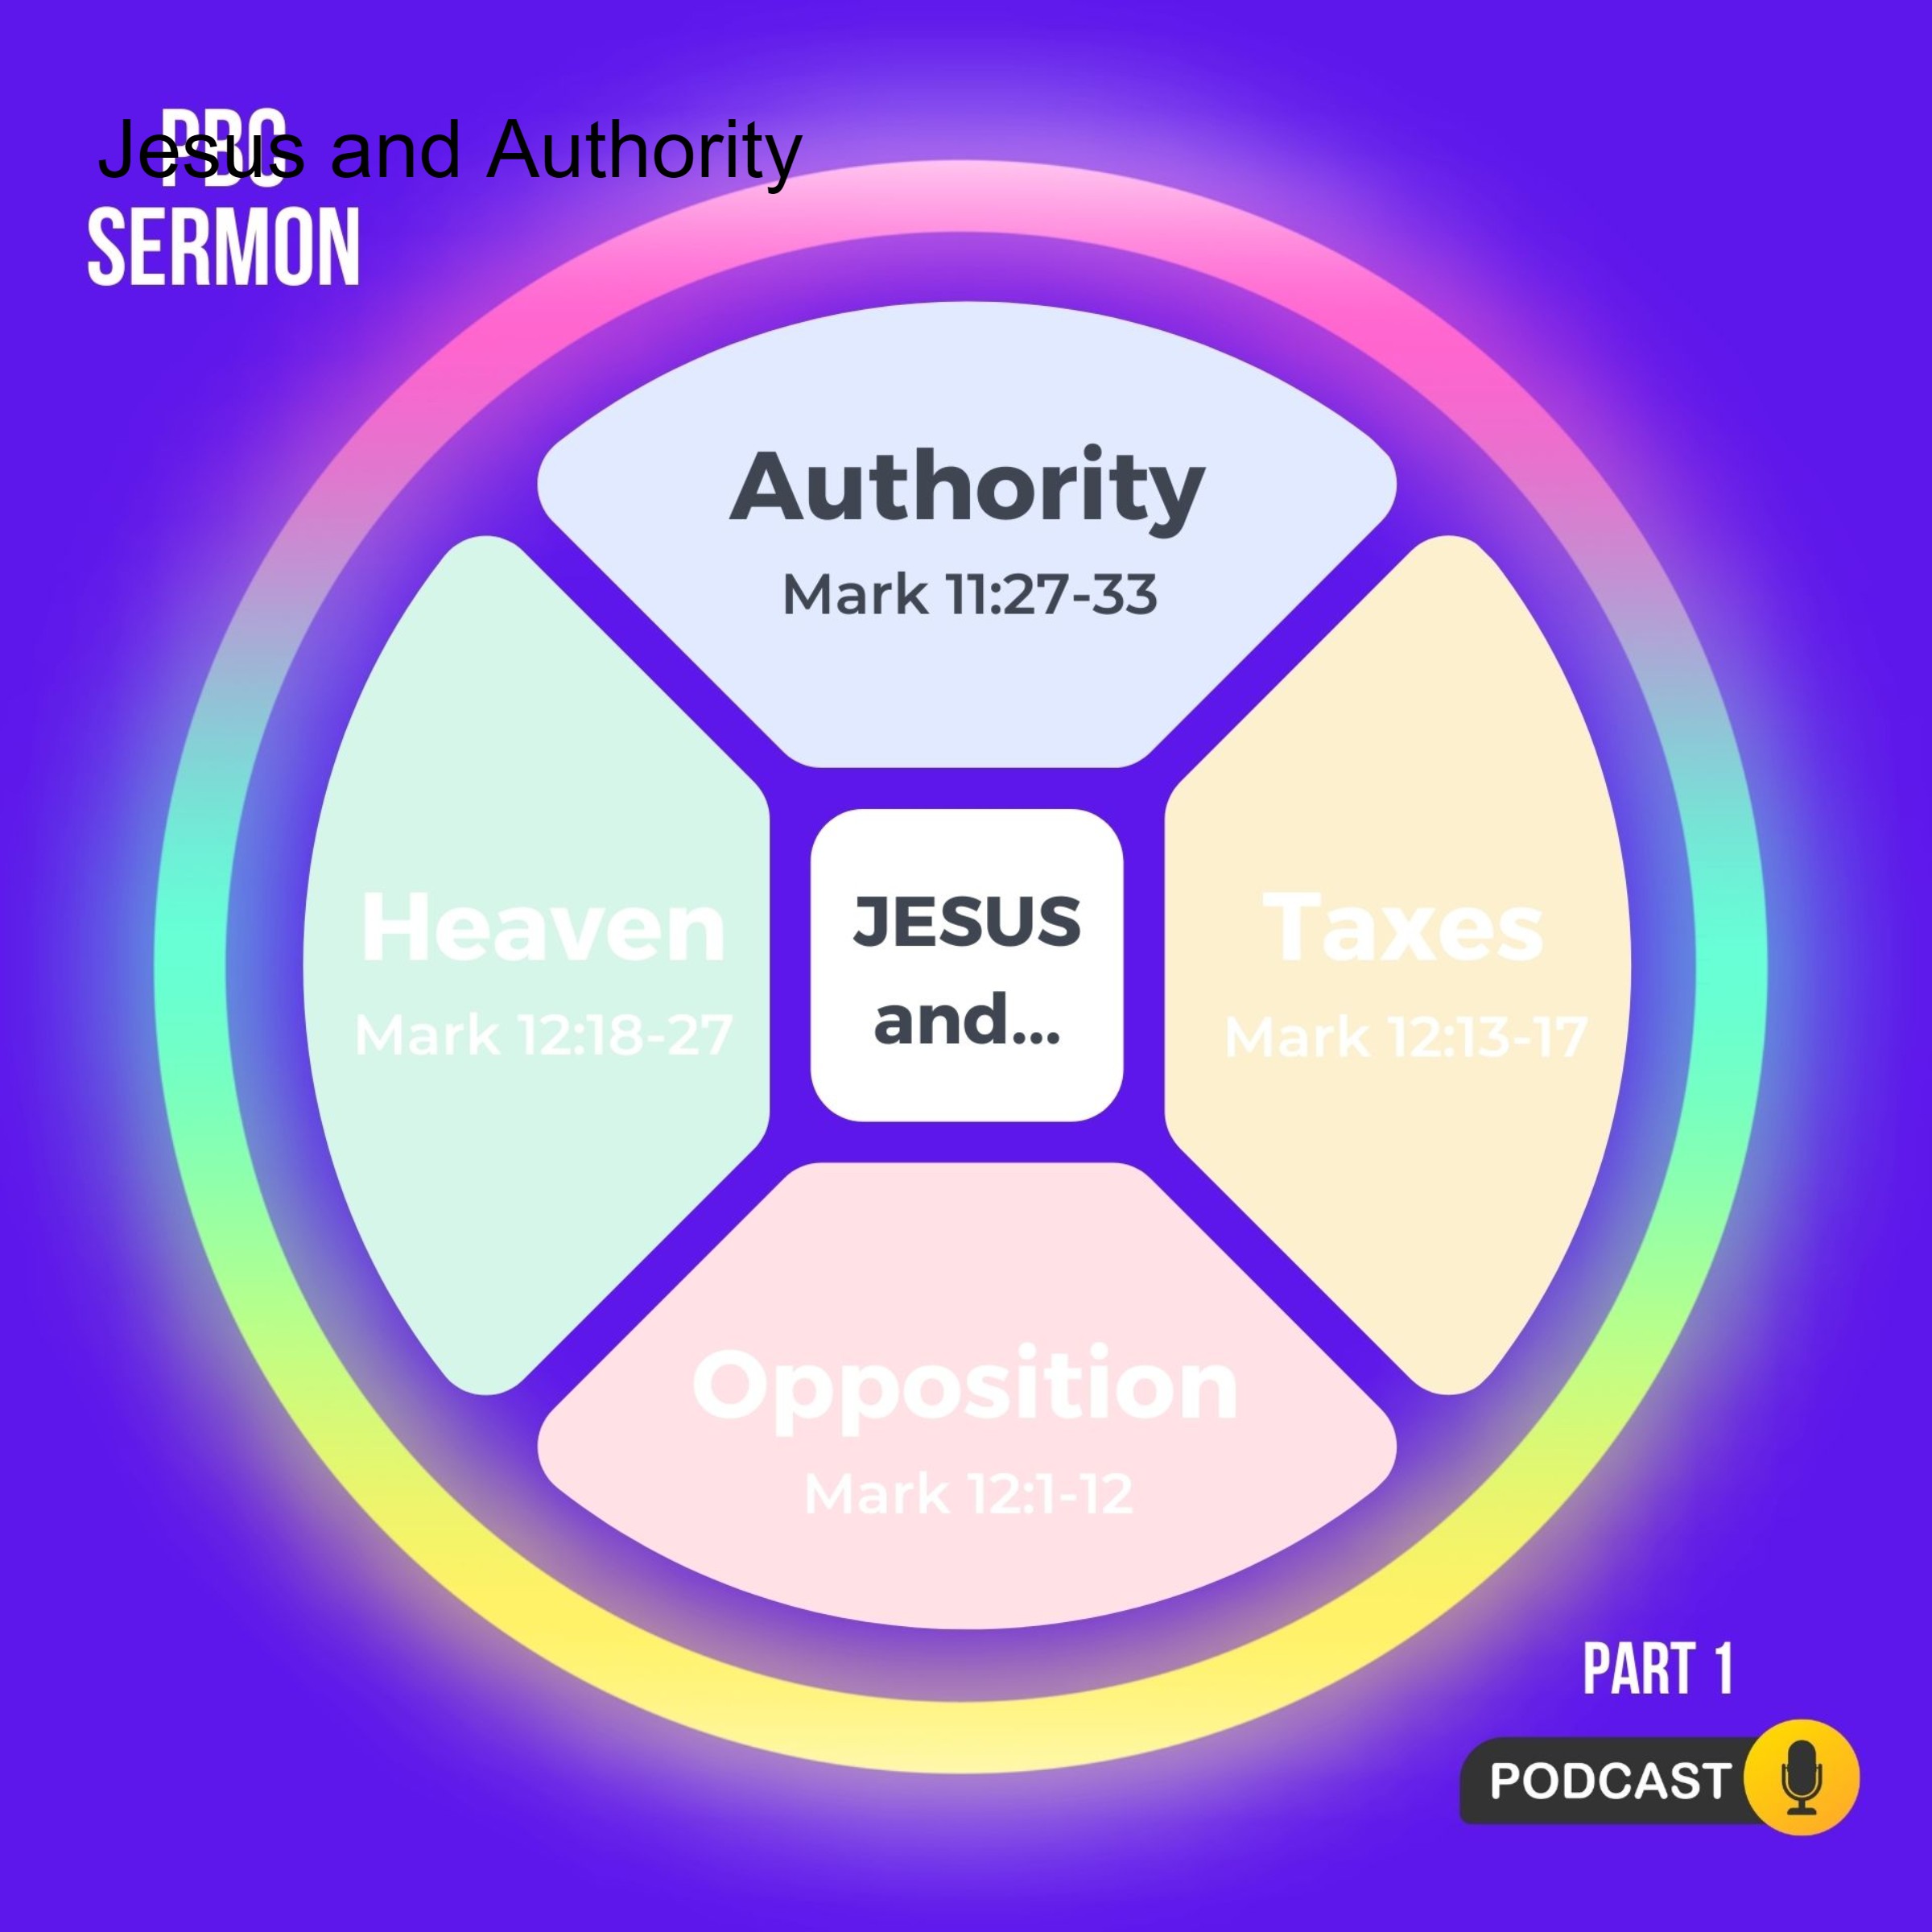 Jesus and Authority